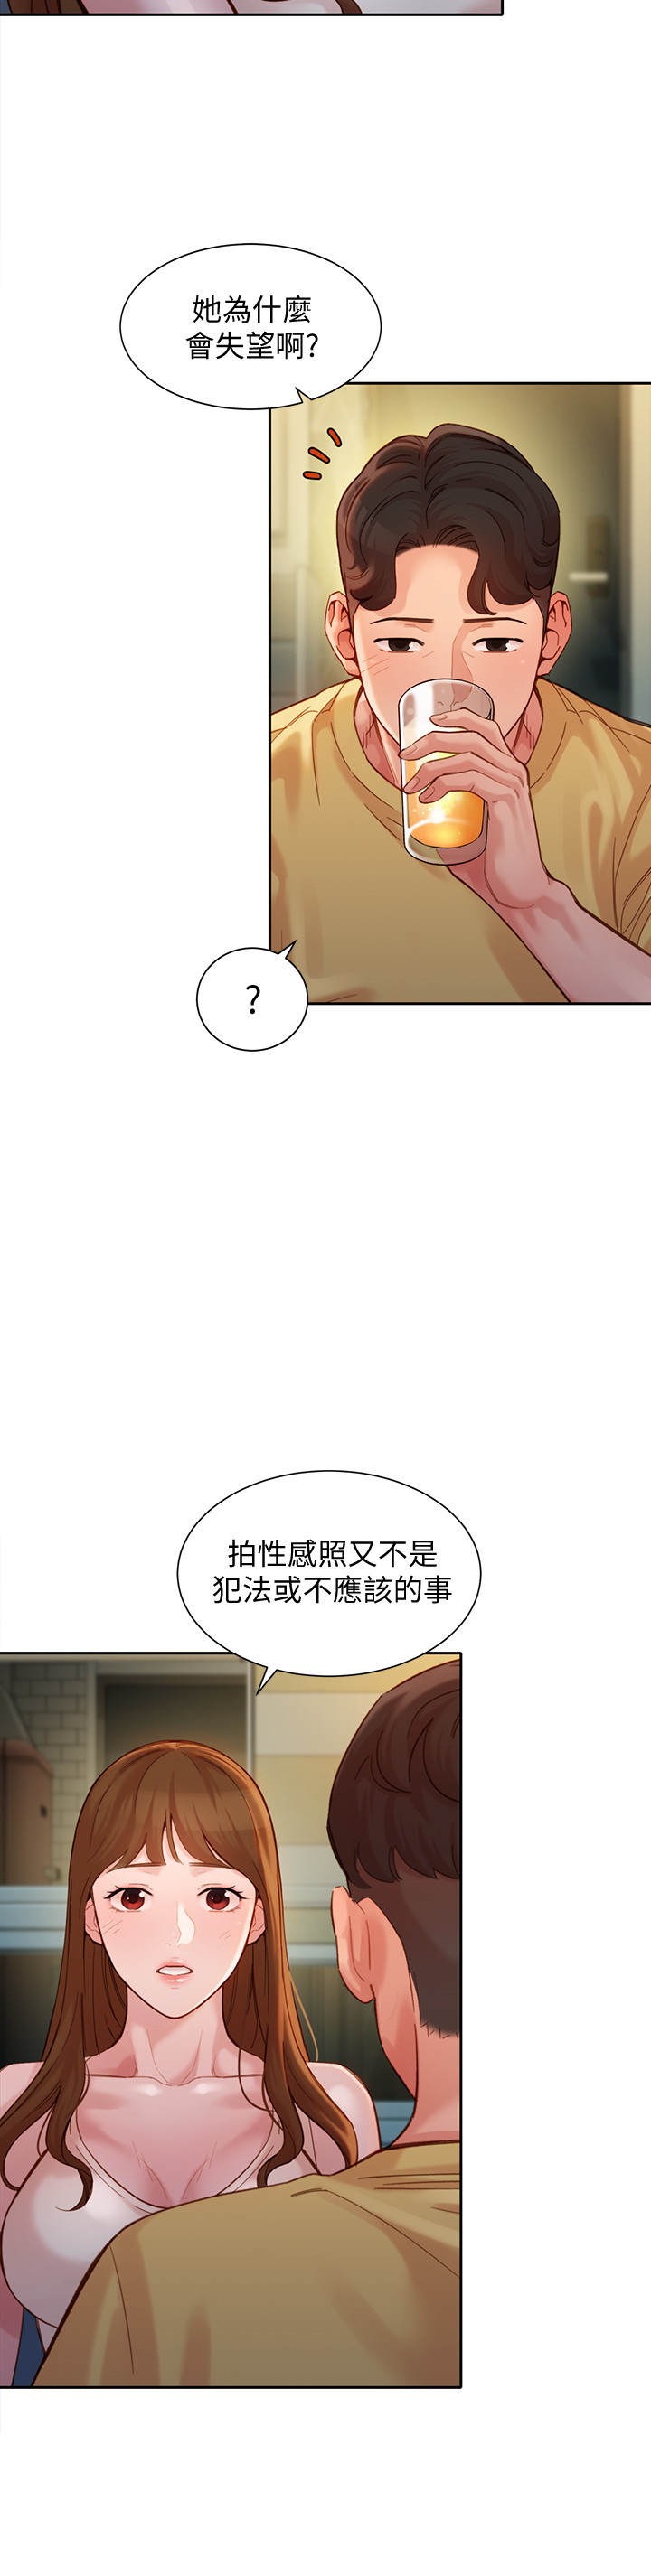 韩国污漫画 女神寫真 第40话 11